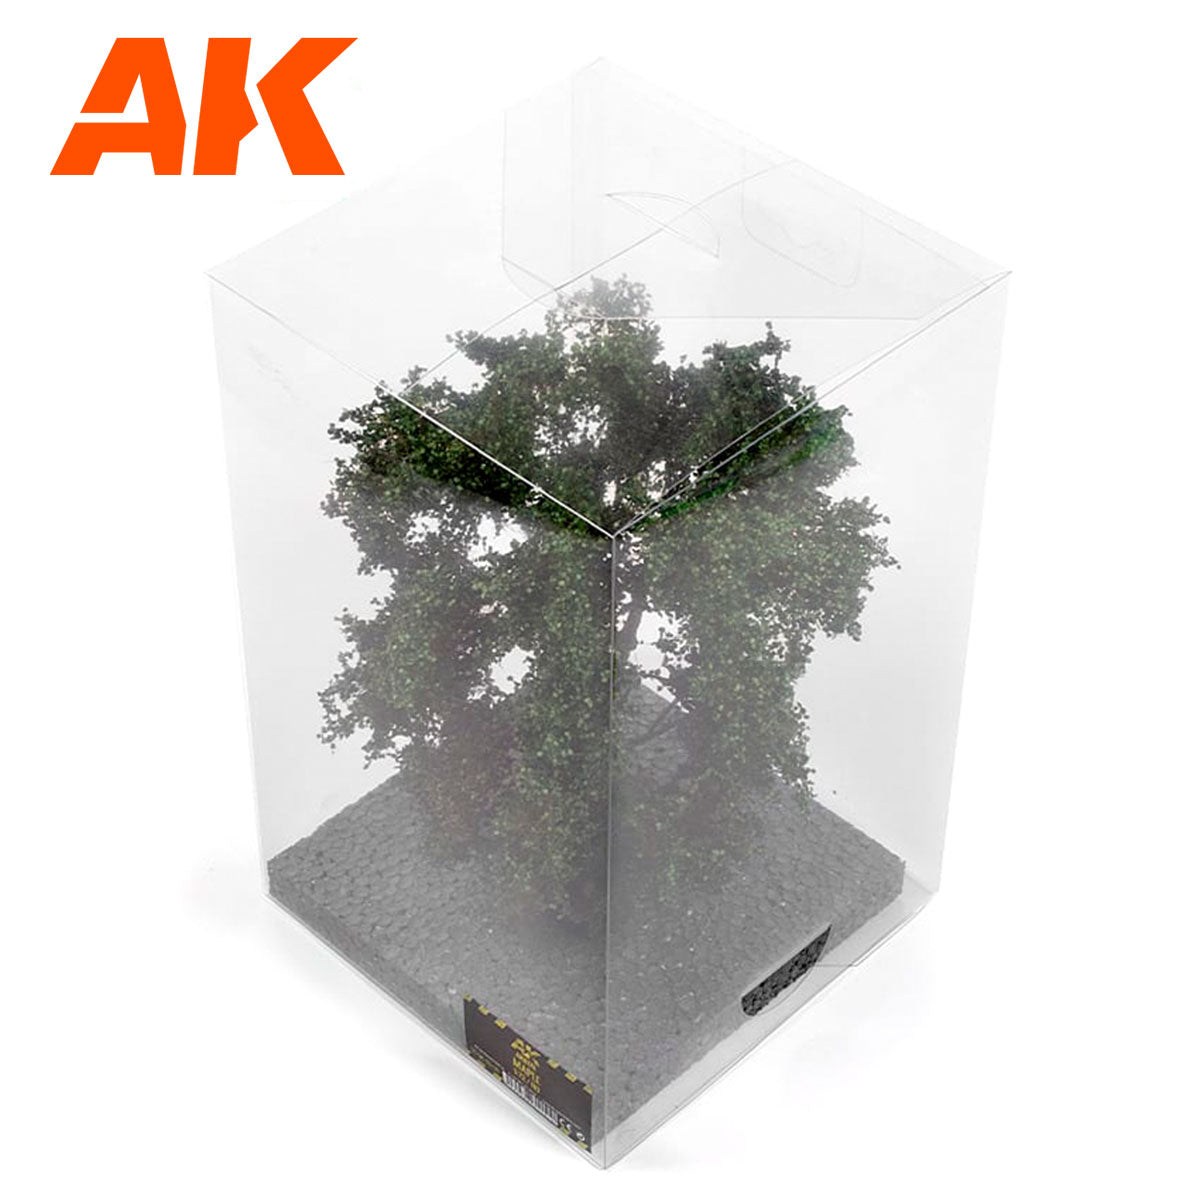 AK8178 - Maple Tree 1/72